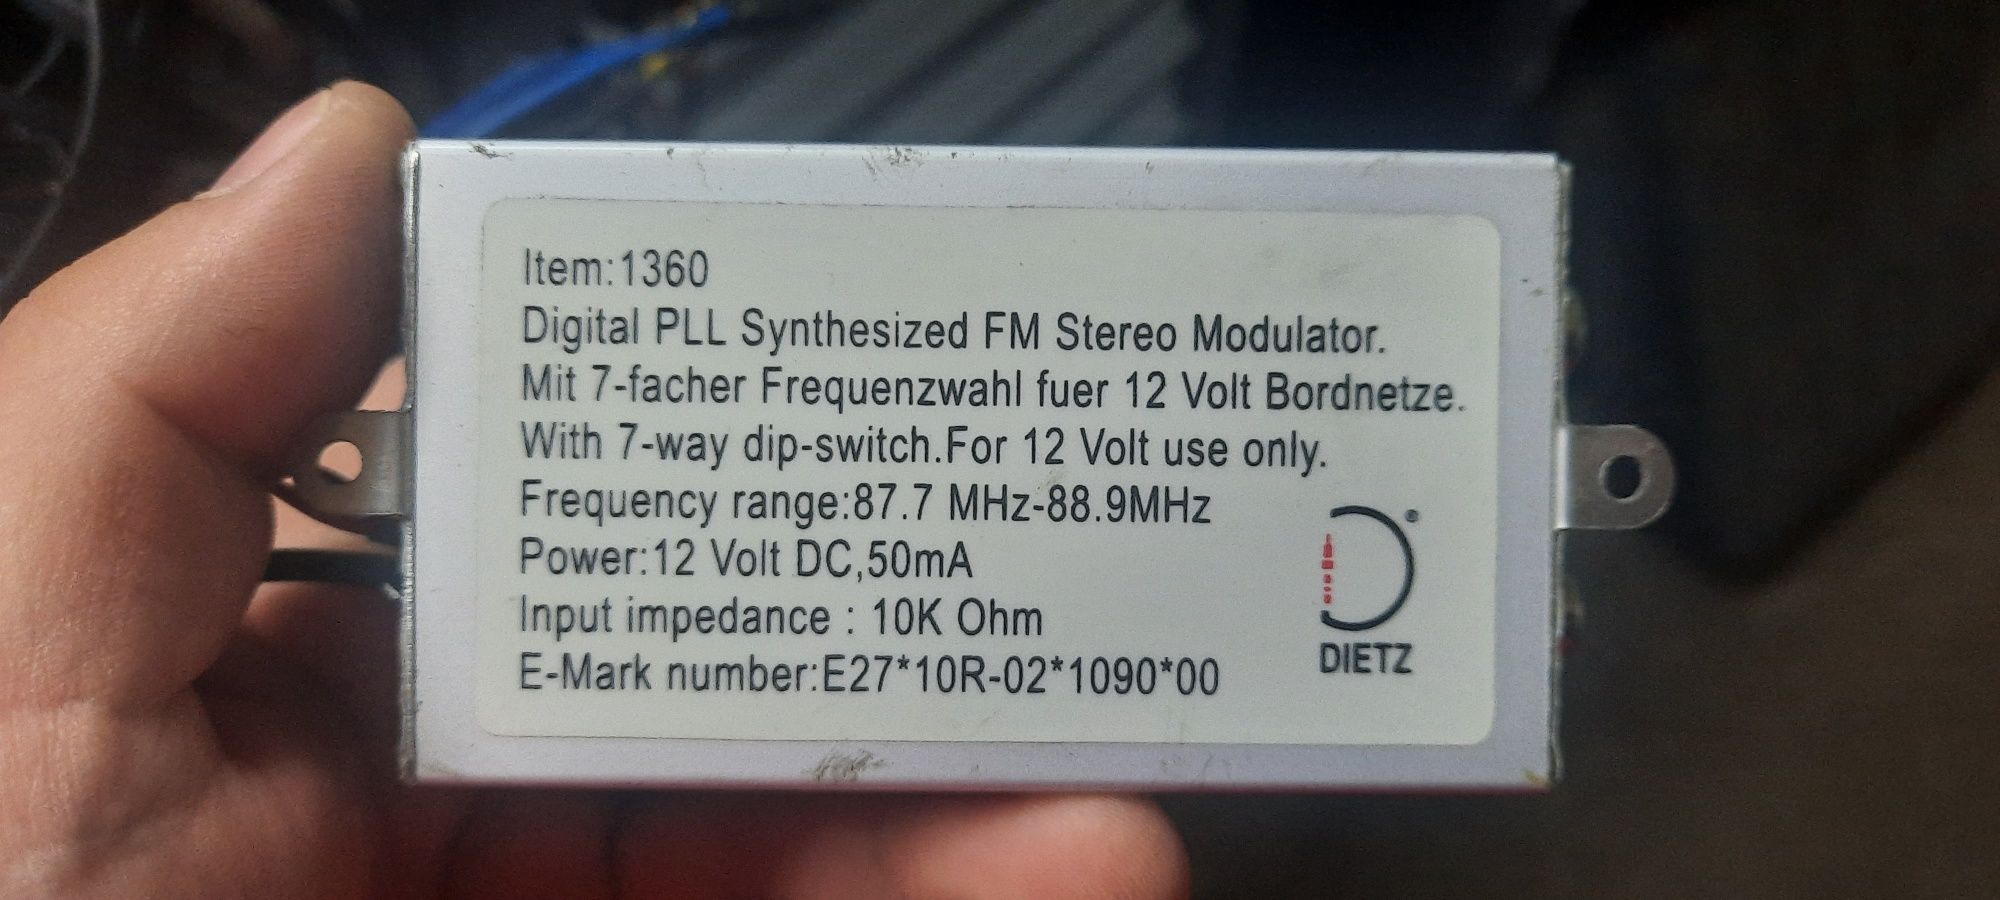 Fm modulator Dietz 1360 фм модулятор